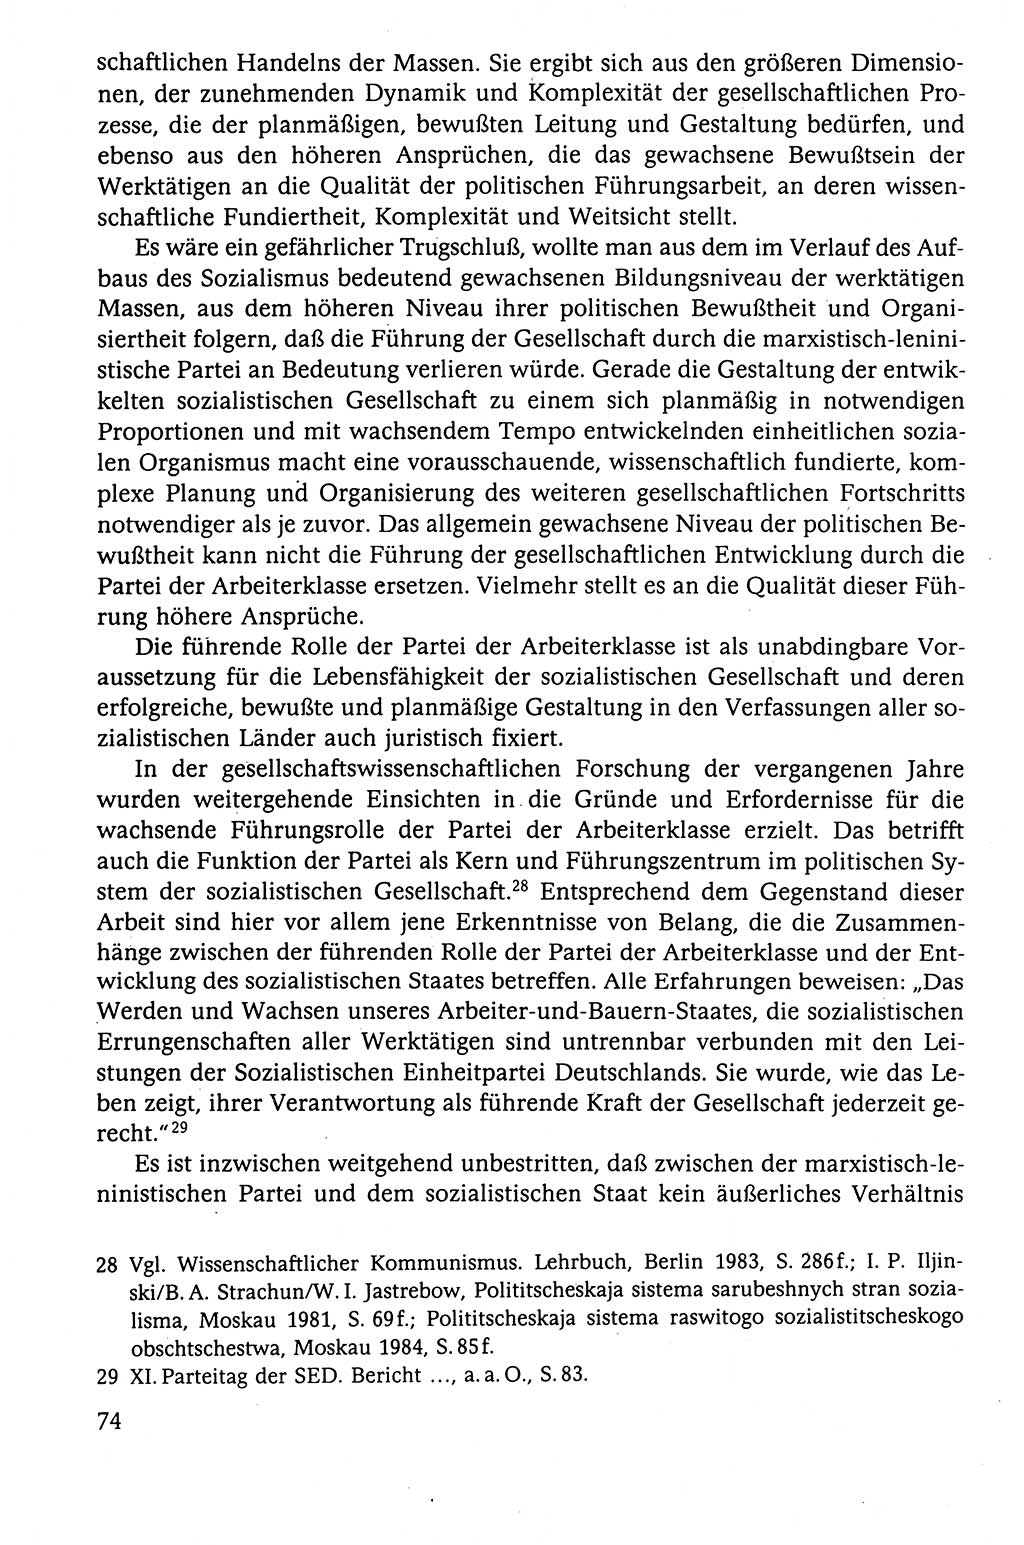 Der Staat im politischen System der DDR (Deutsche Demokratische Republik) 1986, Seite 74 (St. pol. Sys. DDR 1986, S. 74)